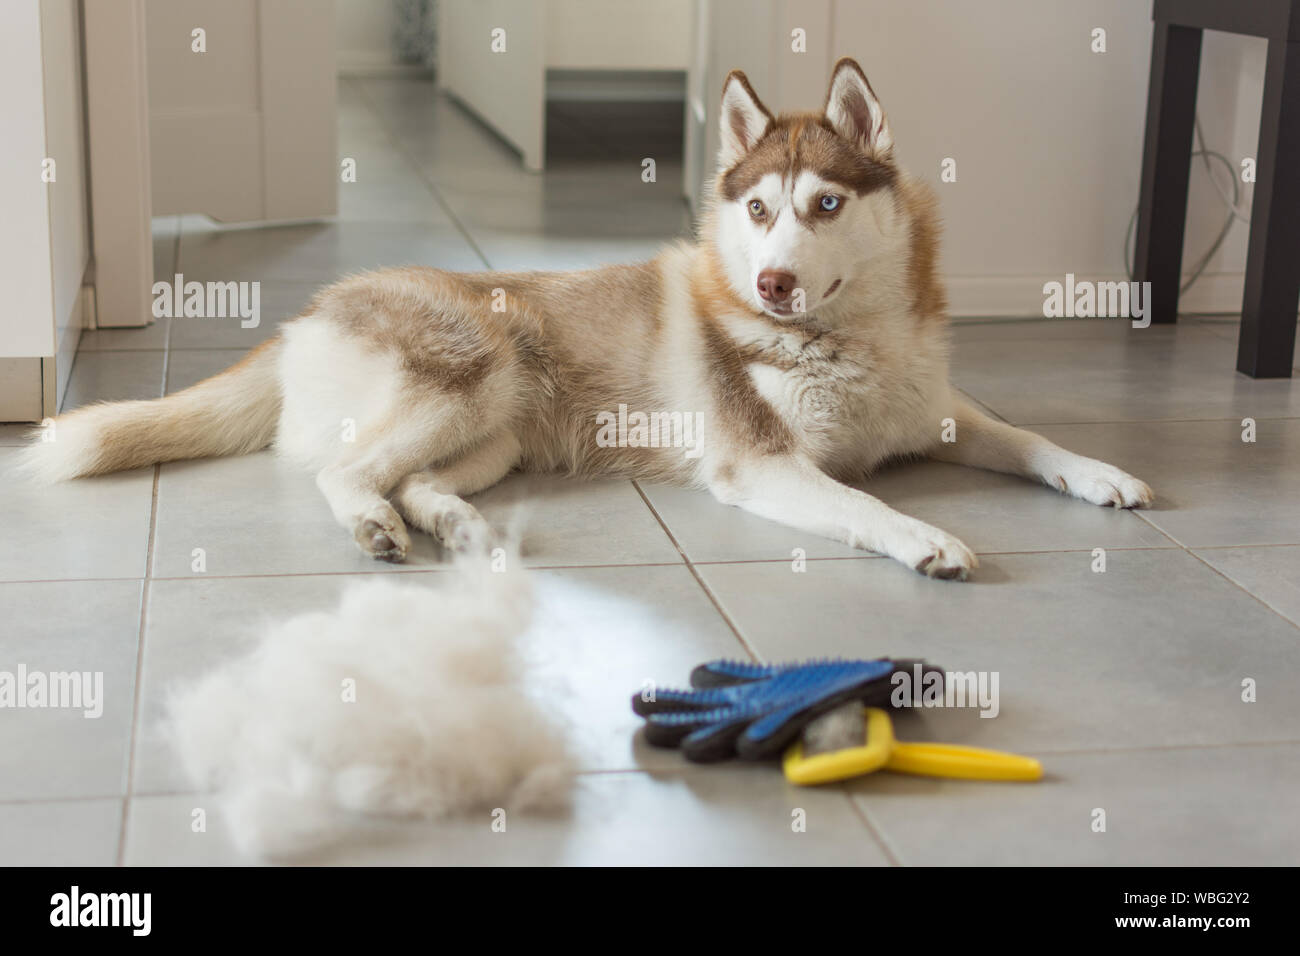 Husky Sibérien se trouve sur marbre en tas de fourrure de chien et son  peigne. Concept mue annuelle, l'excrétion manteau, la mue des chiens.  Brosse pour fourrure de chien de garde Photo